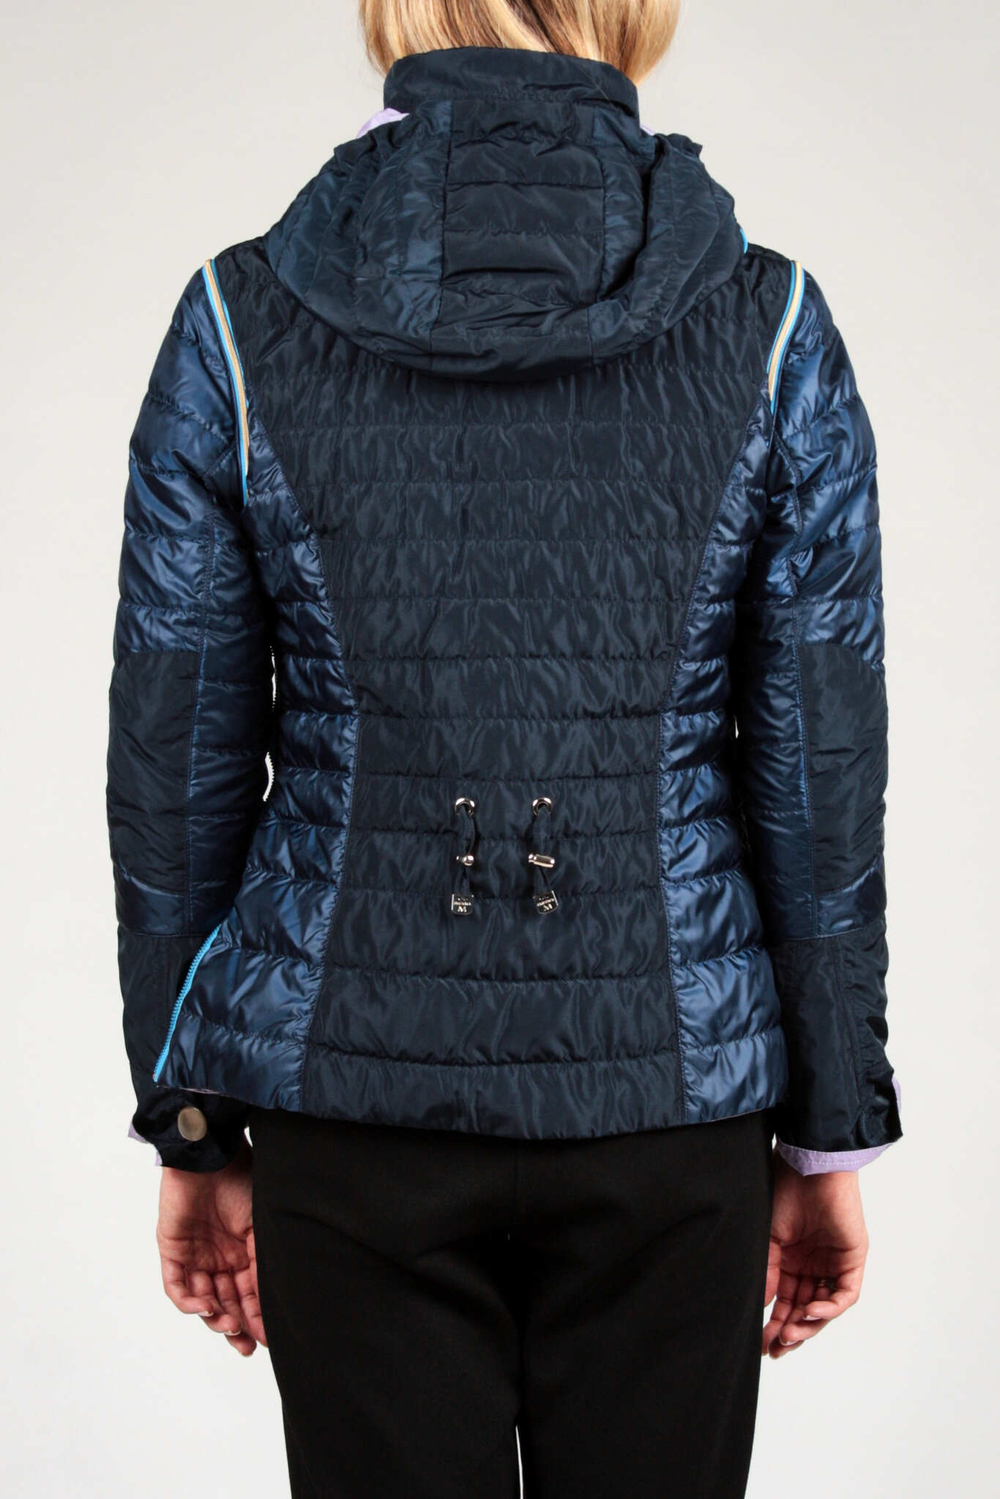 Куртка жен DIEGO M 606 синяя сиреневым двусторонняя